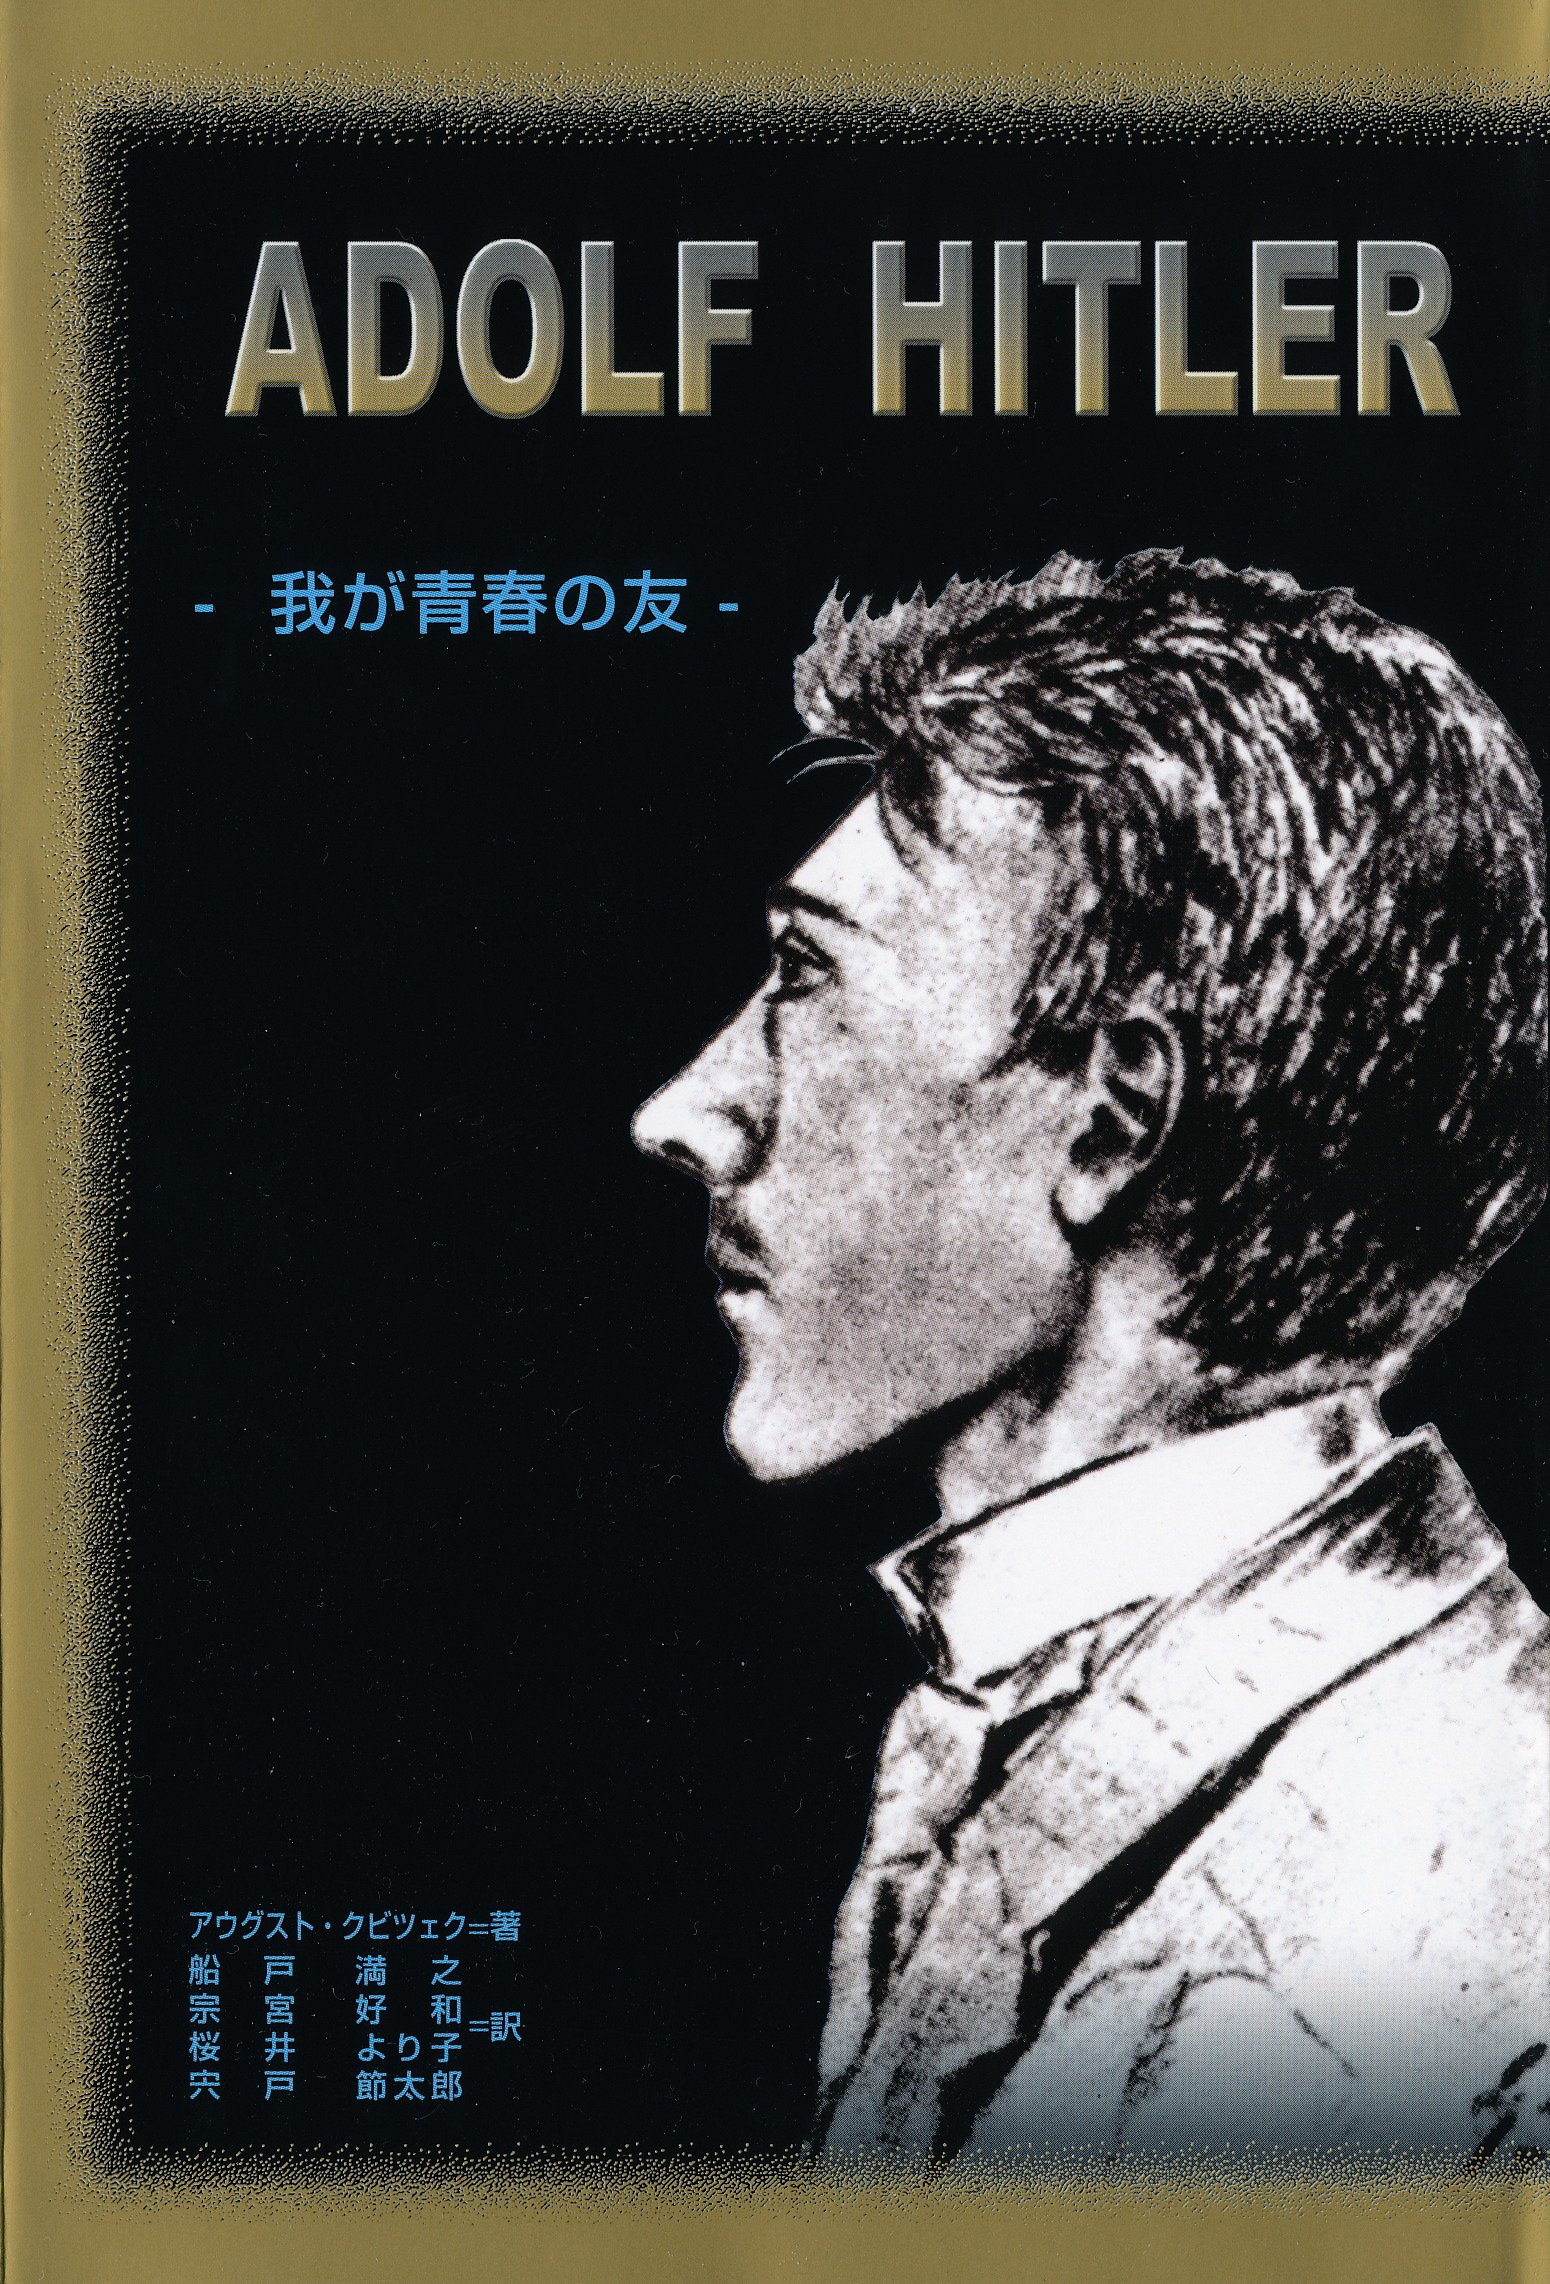 アウグスト・クビツェク（2004）『アドルフ・ヒトラー 我が青春の友』MK出版社